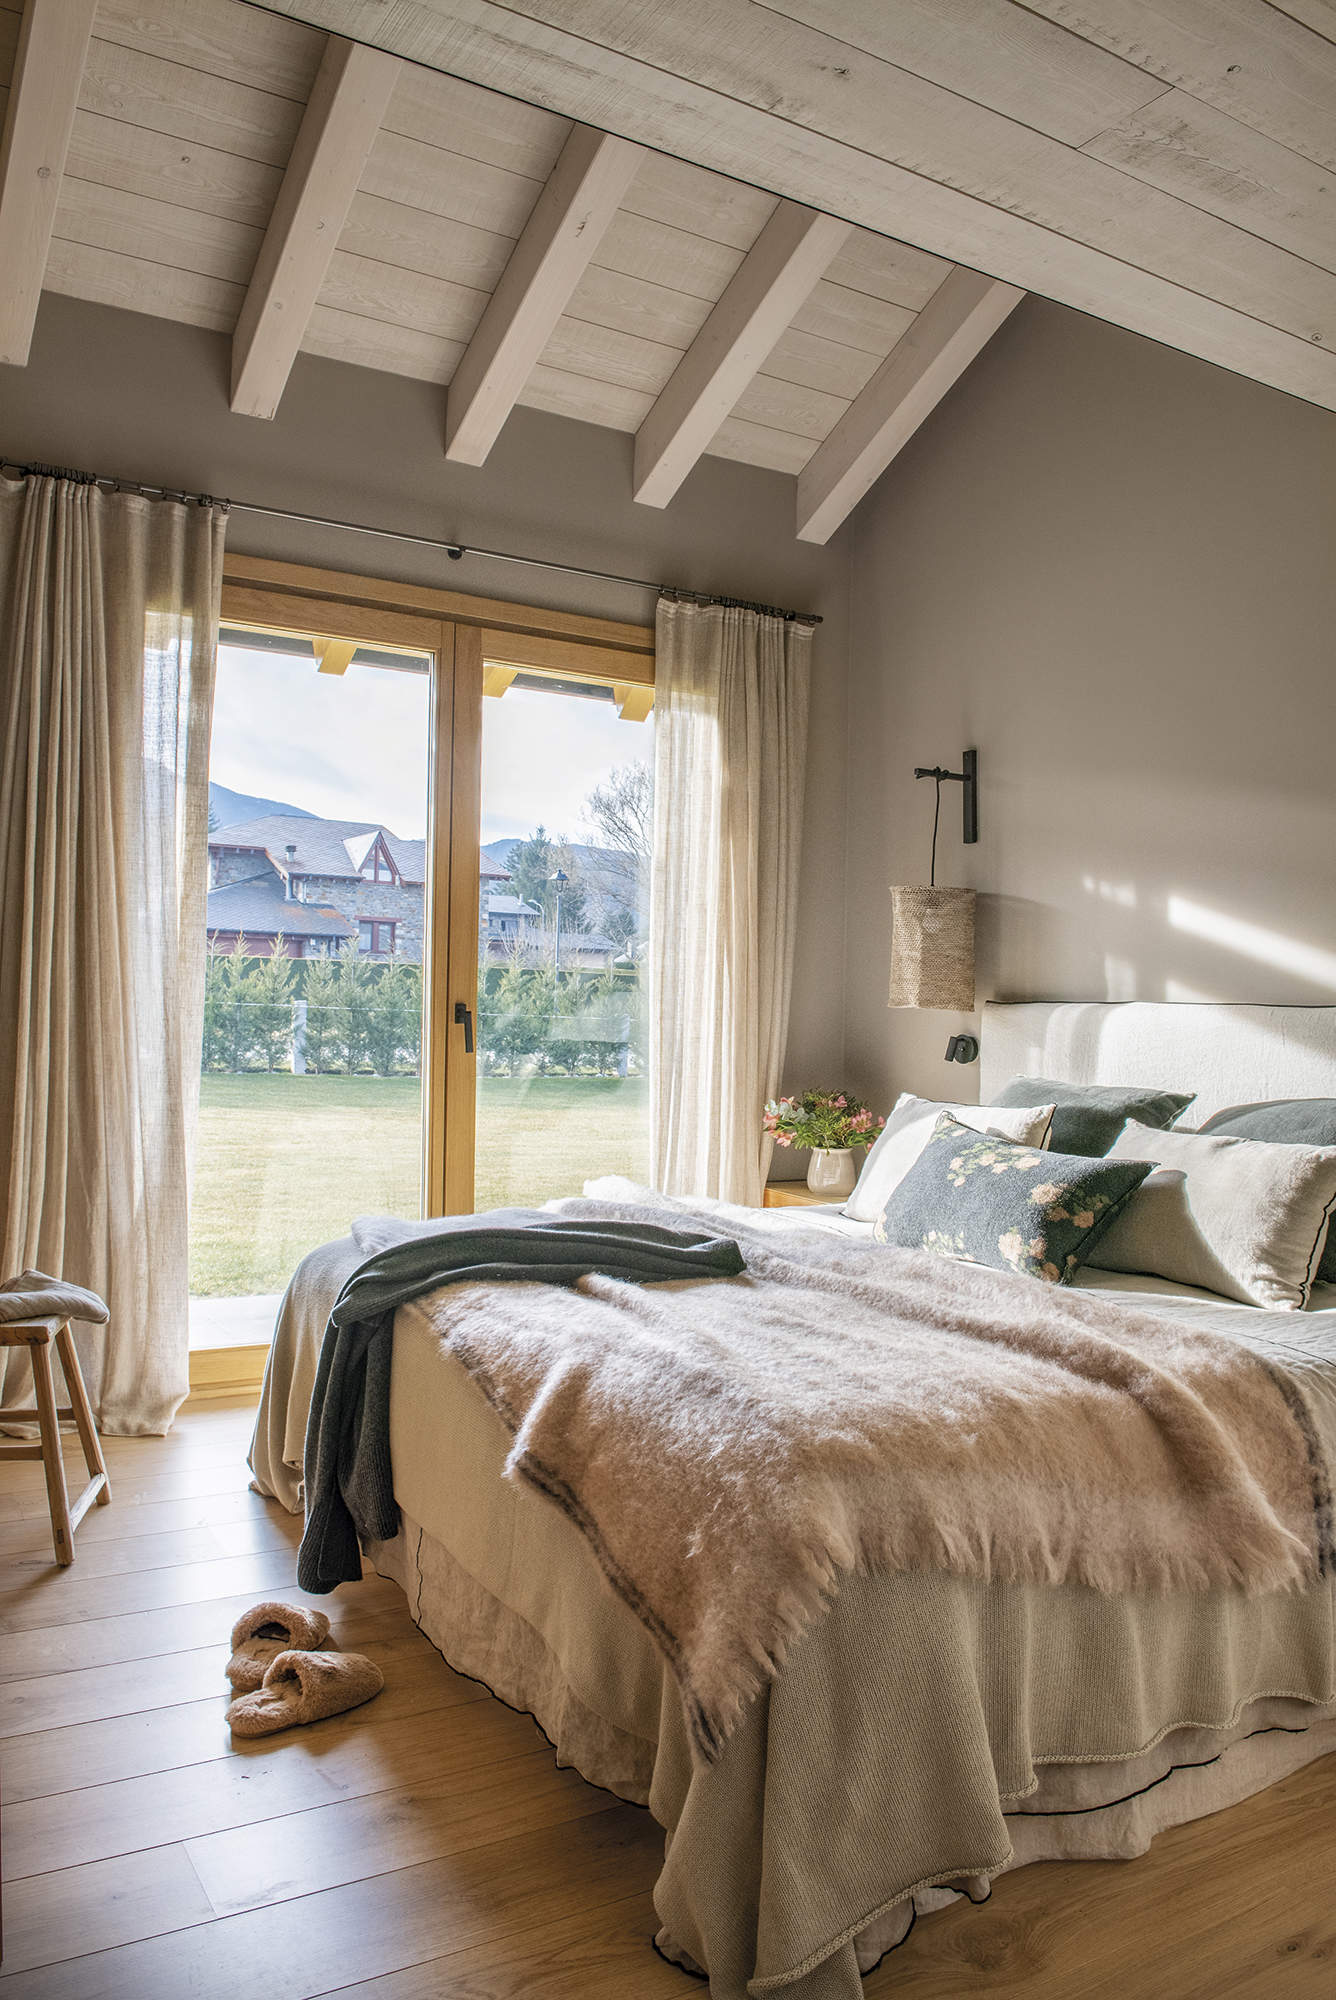 Dormitorio con suelo de parquet, salida a la terraza, cortinas de lino, pintura de pared gris.